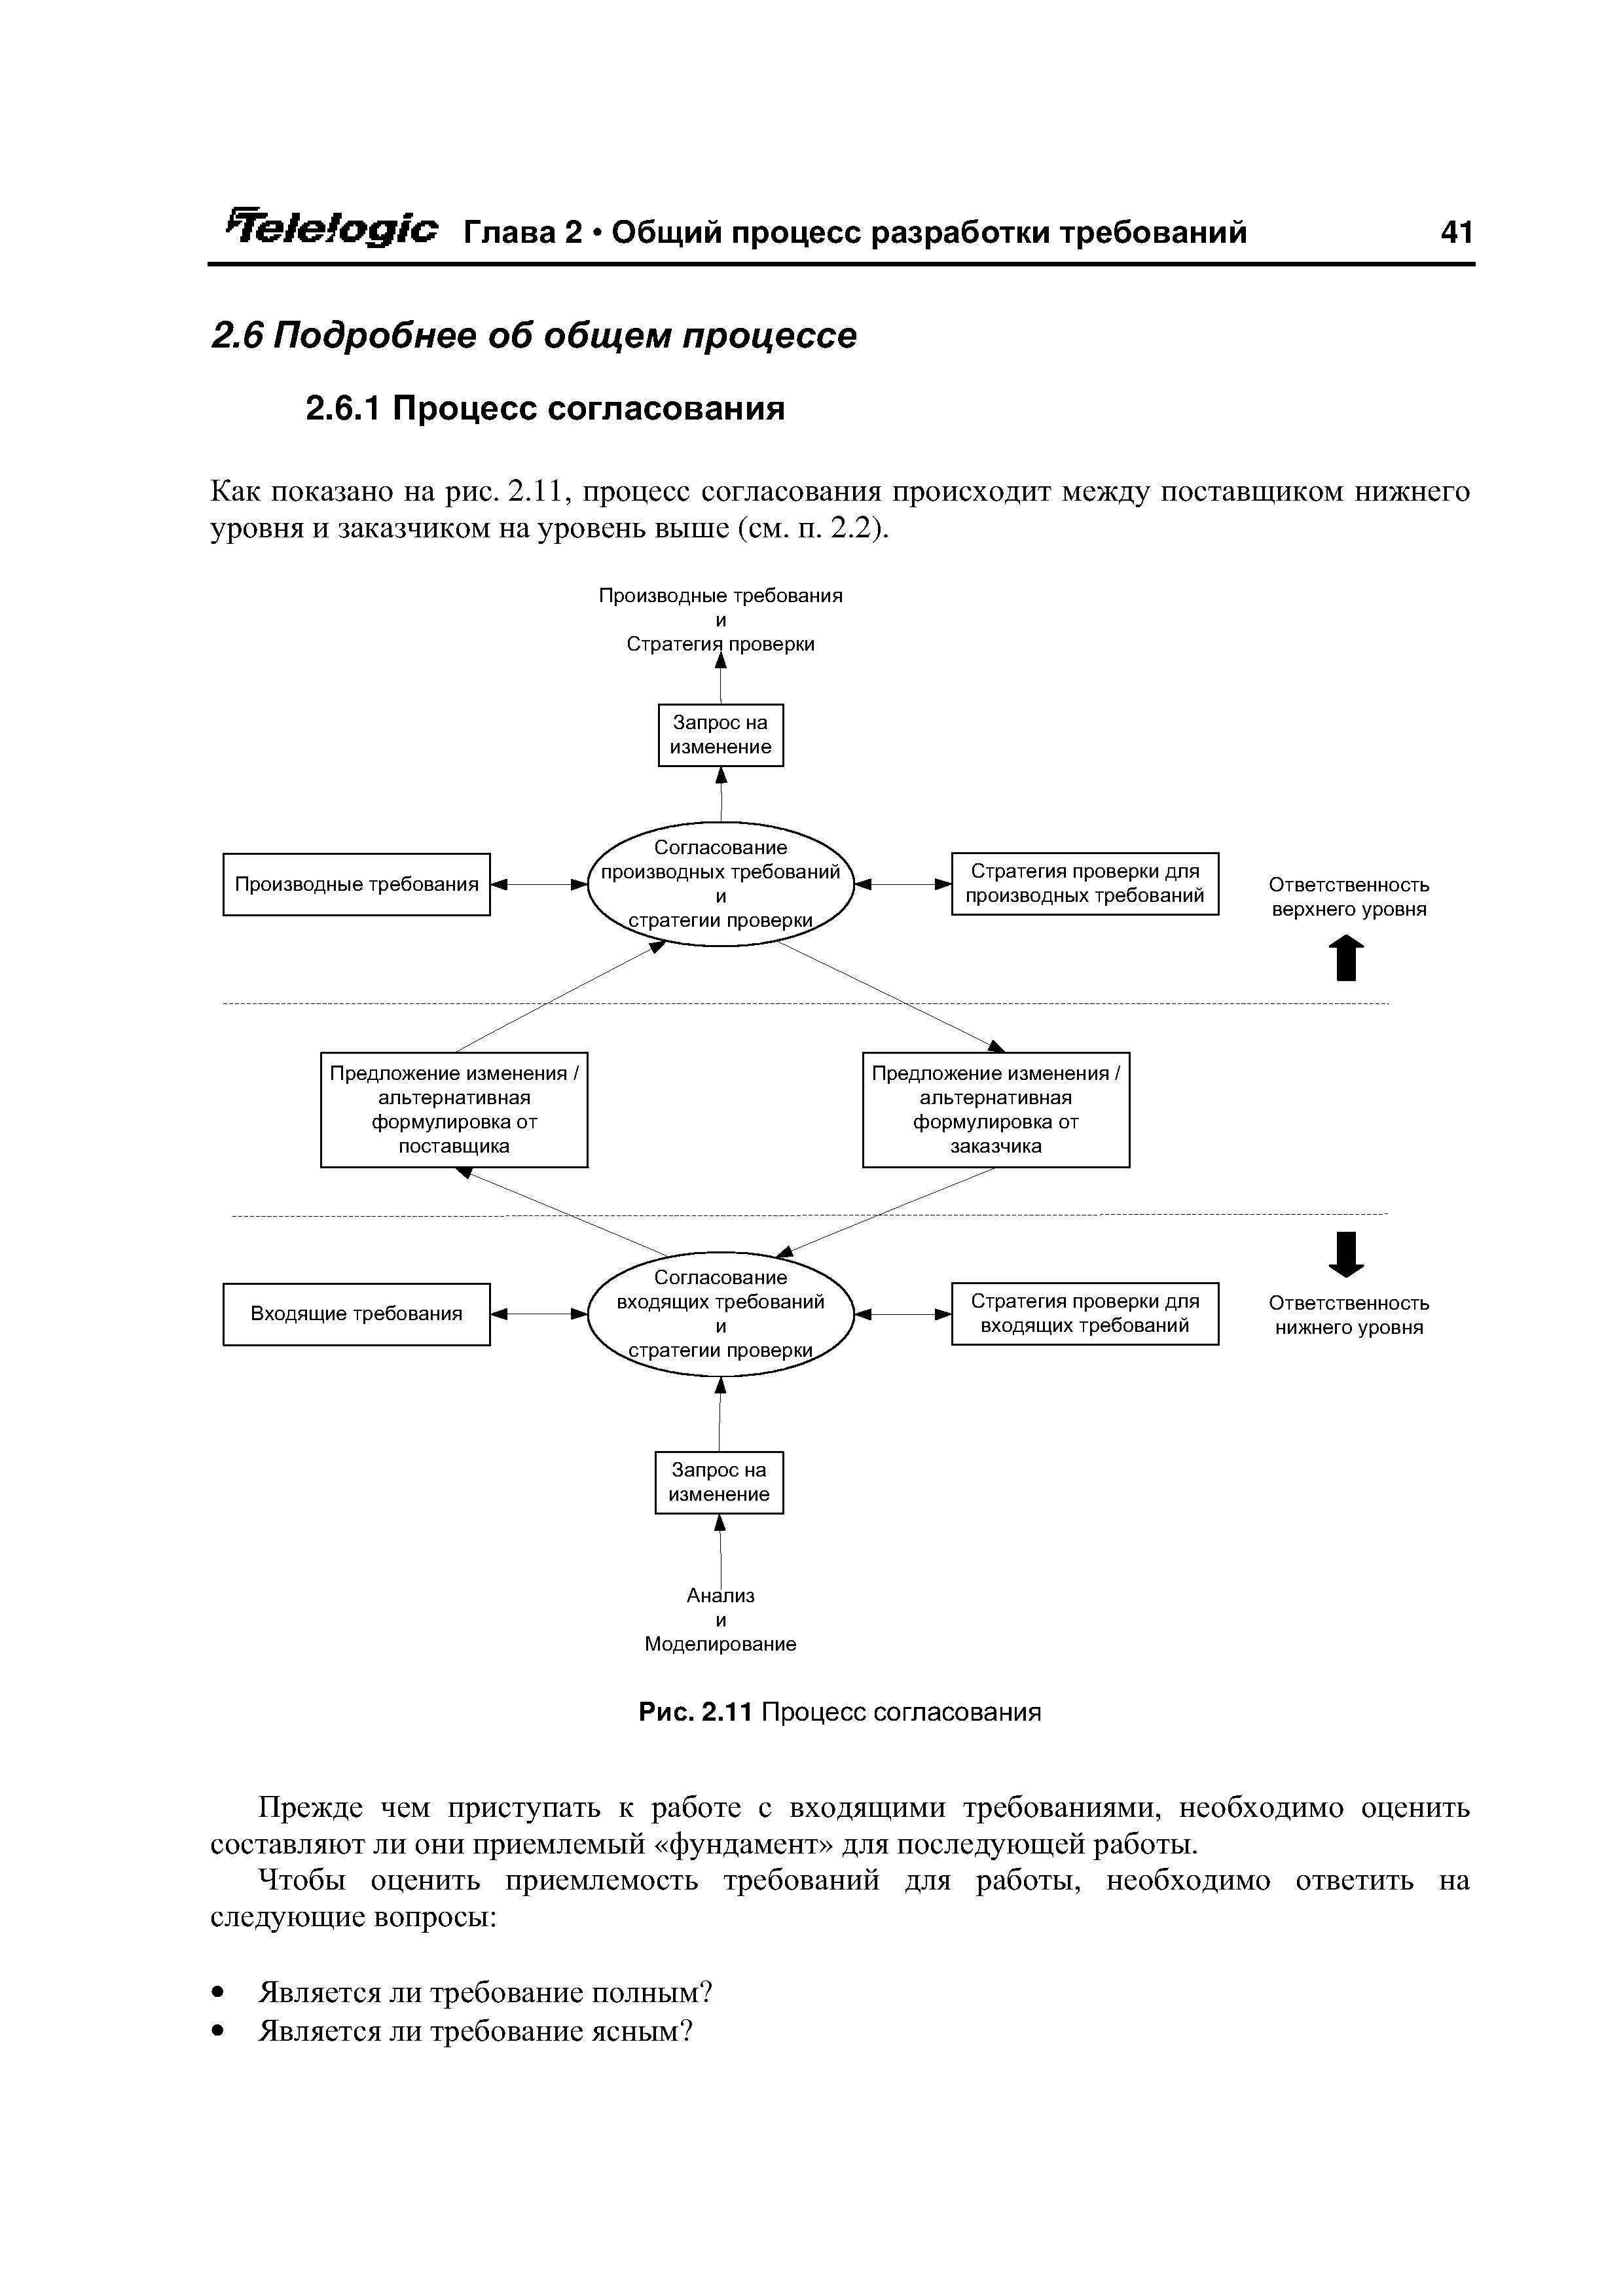 Как показано на рис. 2.11, процесс согласования происходит между поставщиком нижнего уровня и заказчиком на уровень выше (см. п. 2.2).
